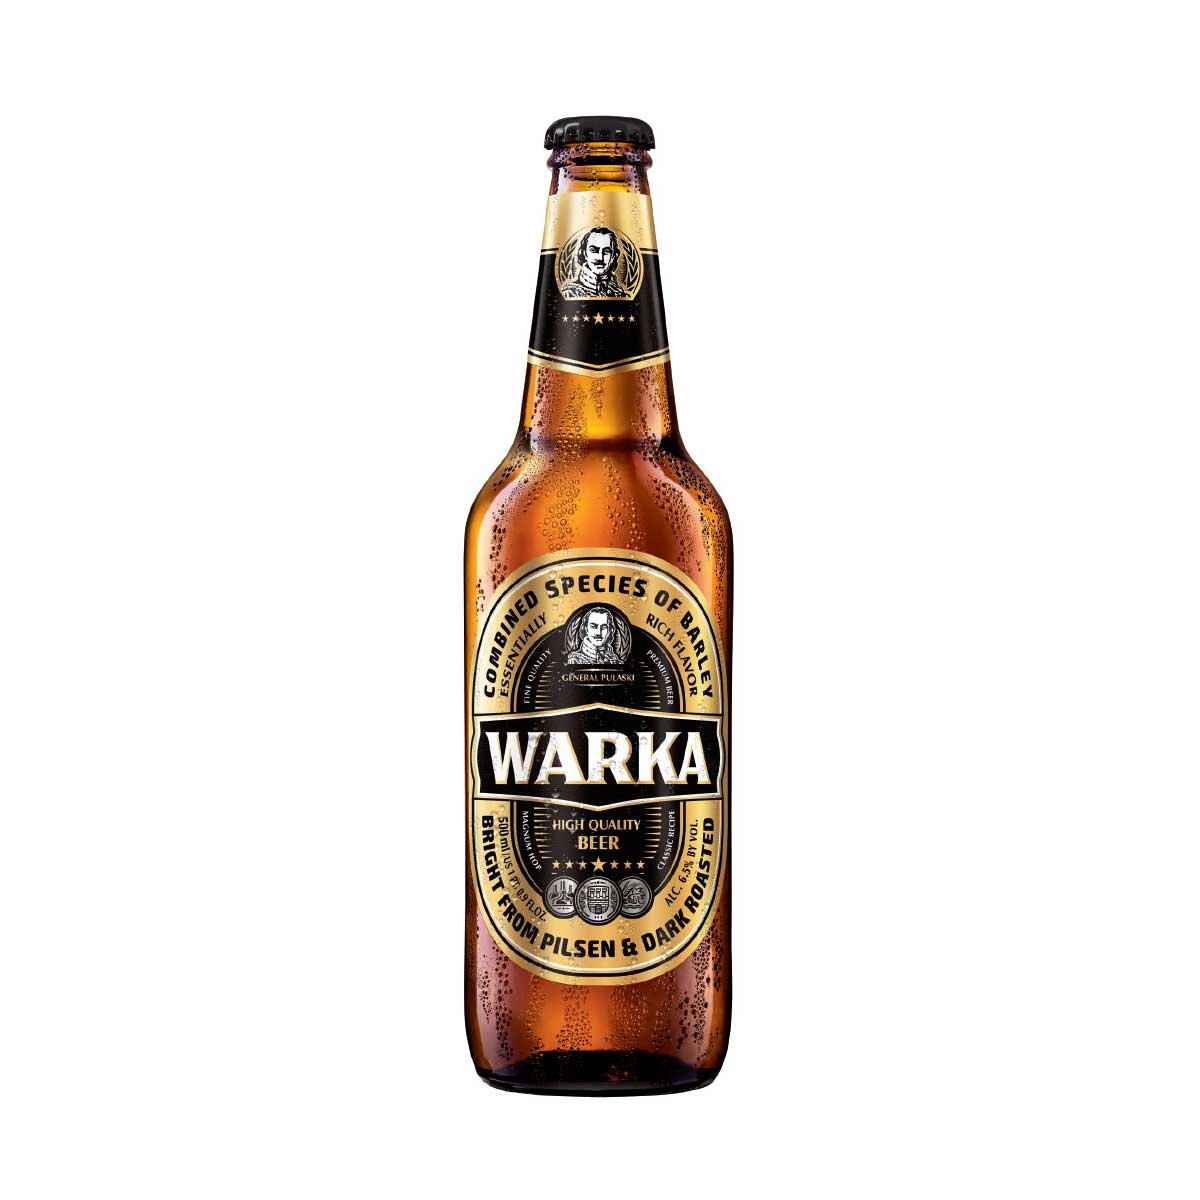 http://beerimporters.us/wp-content/uploads/2017/05/warka3.jpg